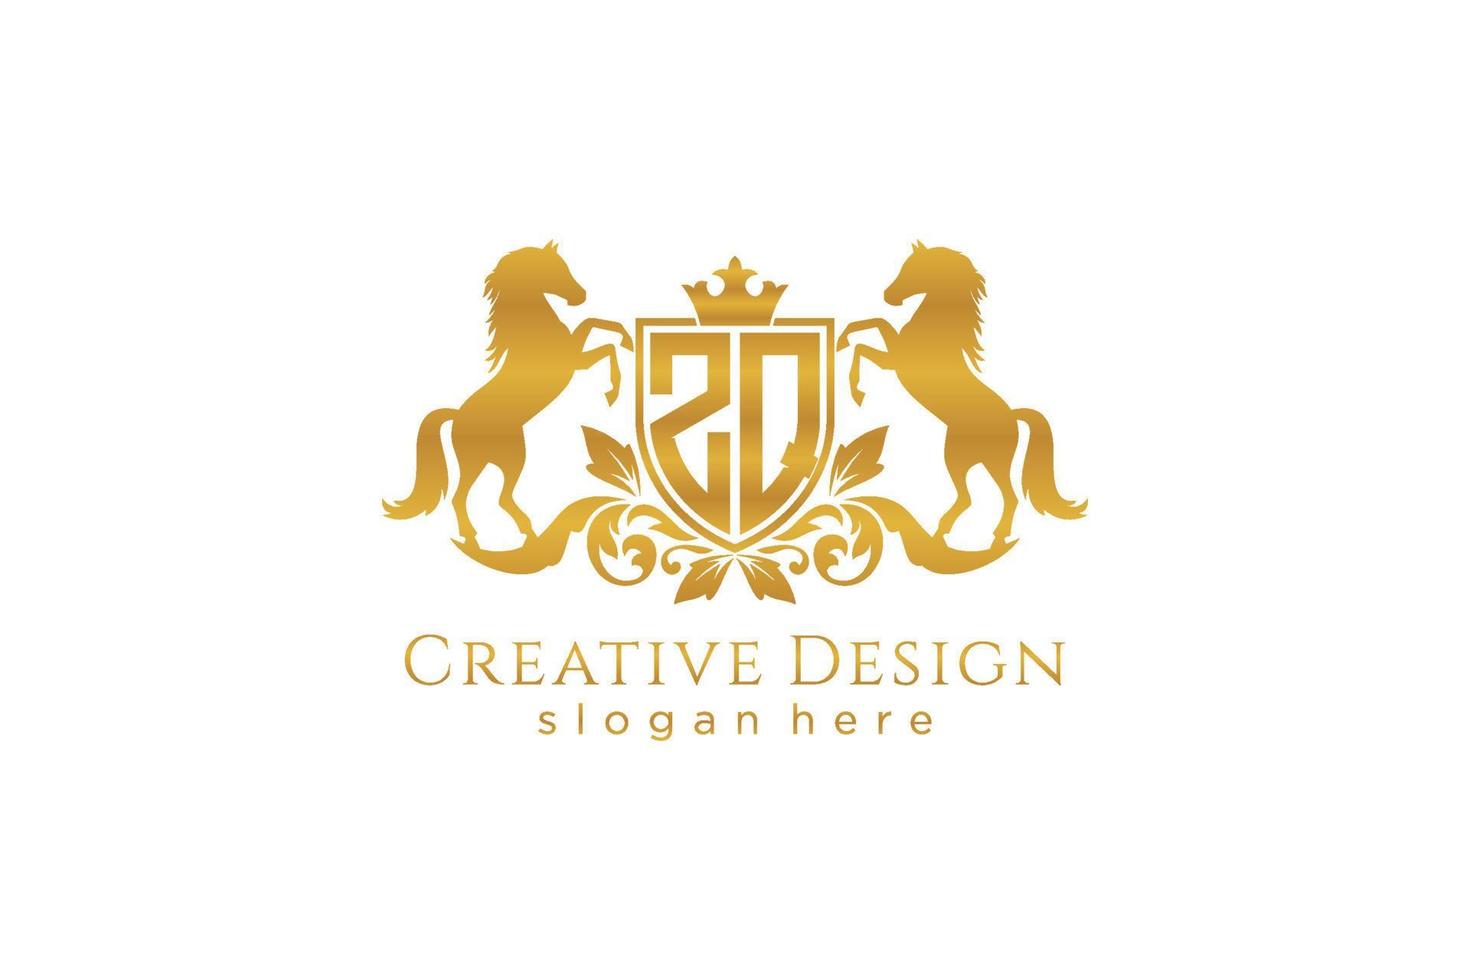 crista dourada retrô inicial zq com escudo e dois cavalos, modelo de crachá com pergaminhos e coroa real - perfeito para projetos de marca luxuosos vetor